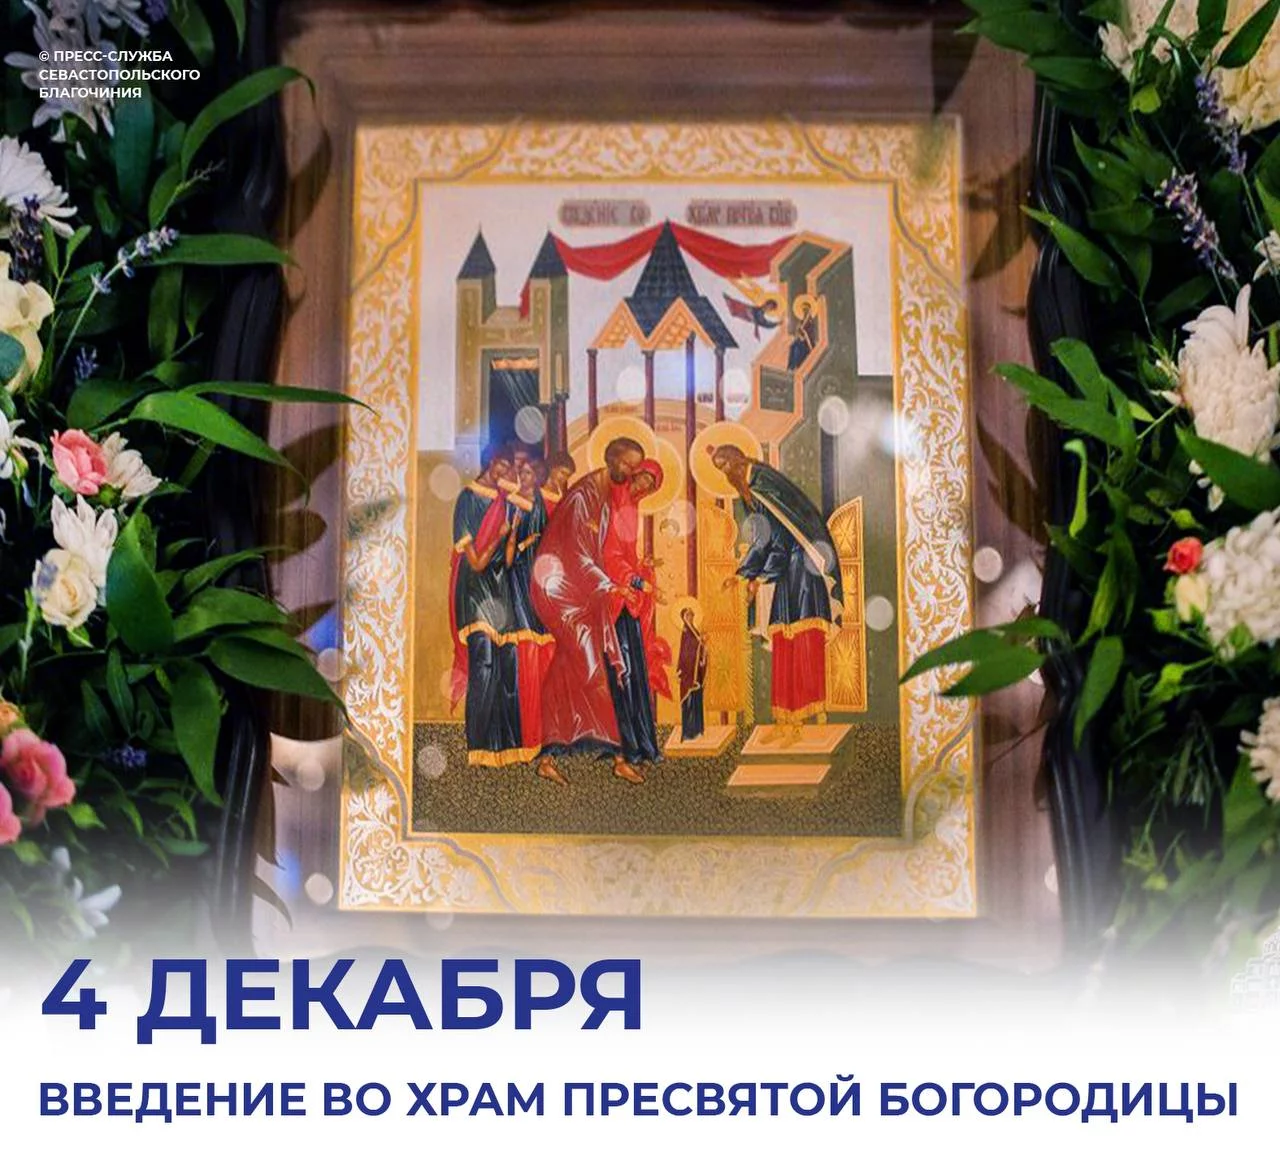 Православный мир сегодня отмечает Введение во храм Пресвятой Богородицы.